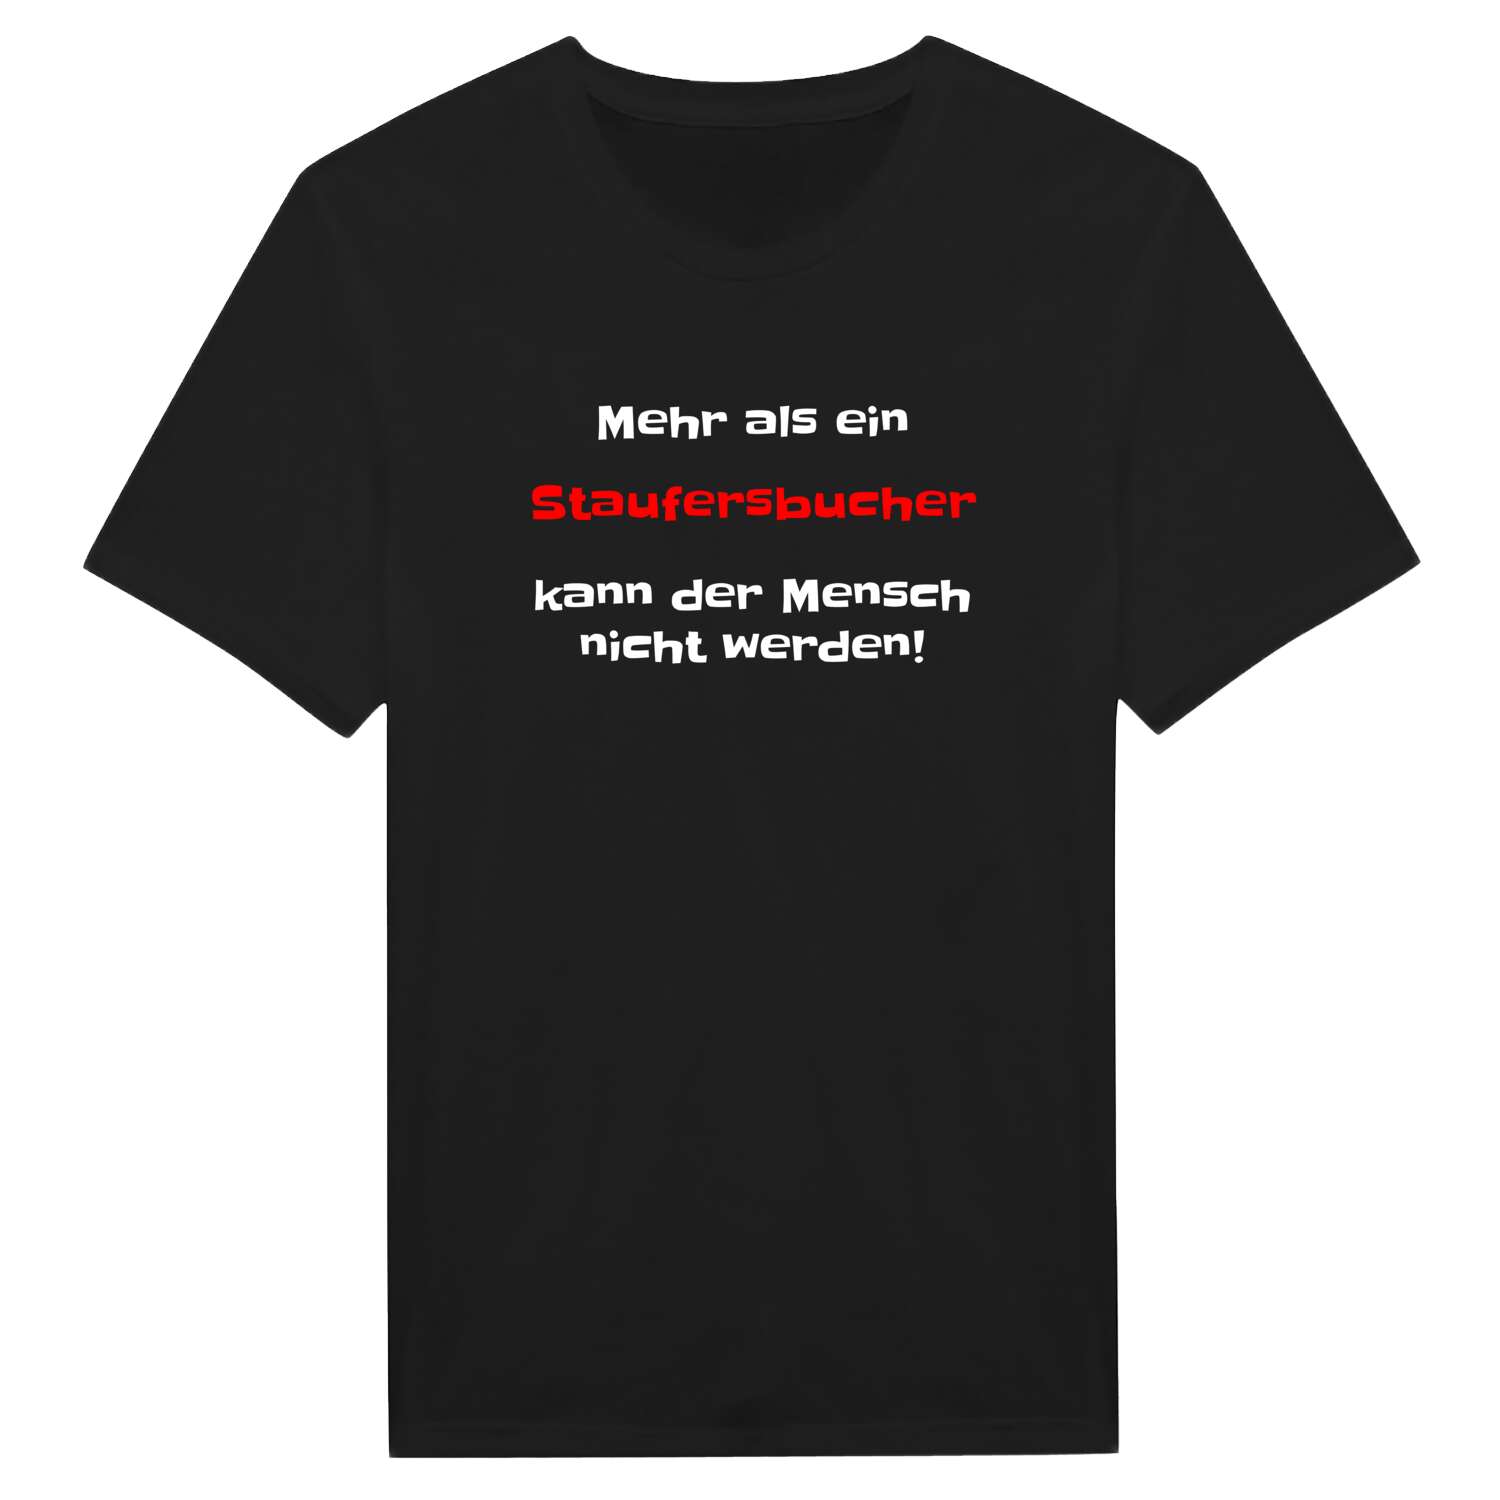 Staufersbuch T-Shirt »Mehr als ein«